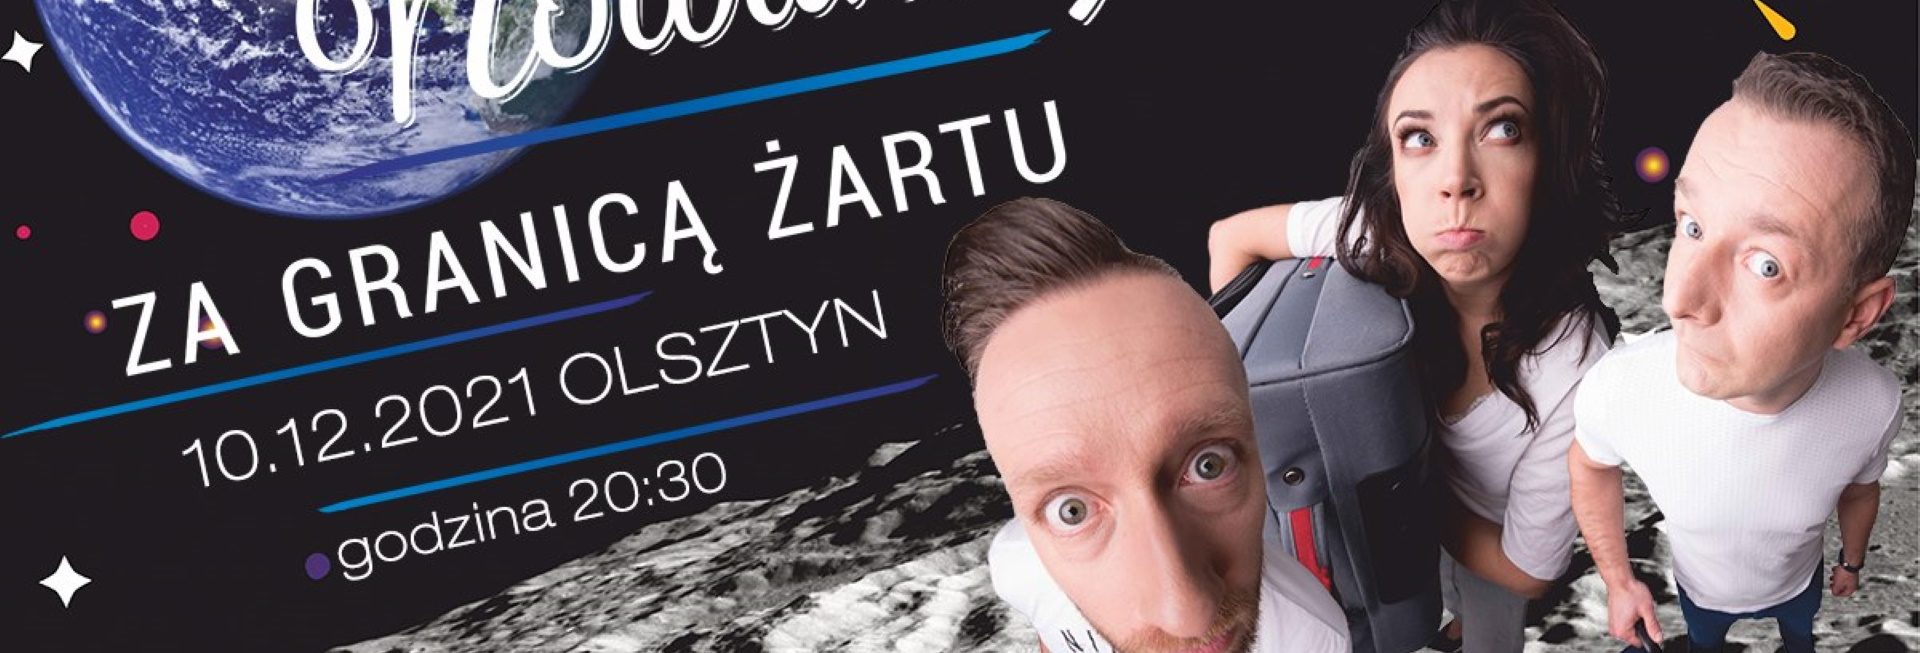 Plakat graficzny zapraszający do Olsztyna na występ kabaretu Nowaki "Za granicą żartu" - Olsztyn 2021.